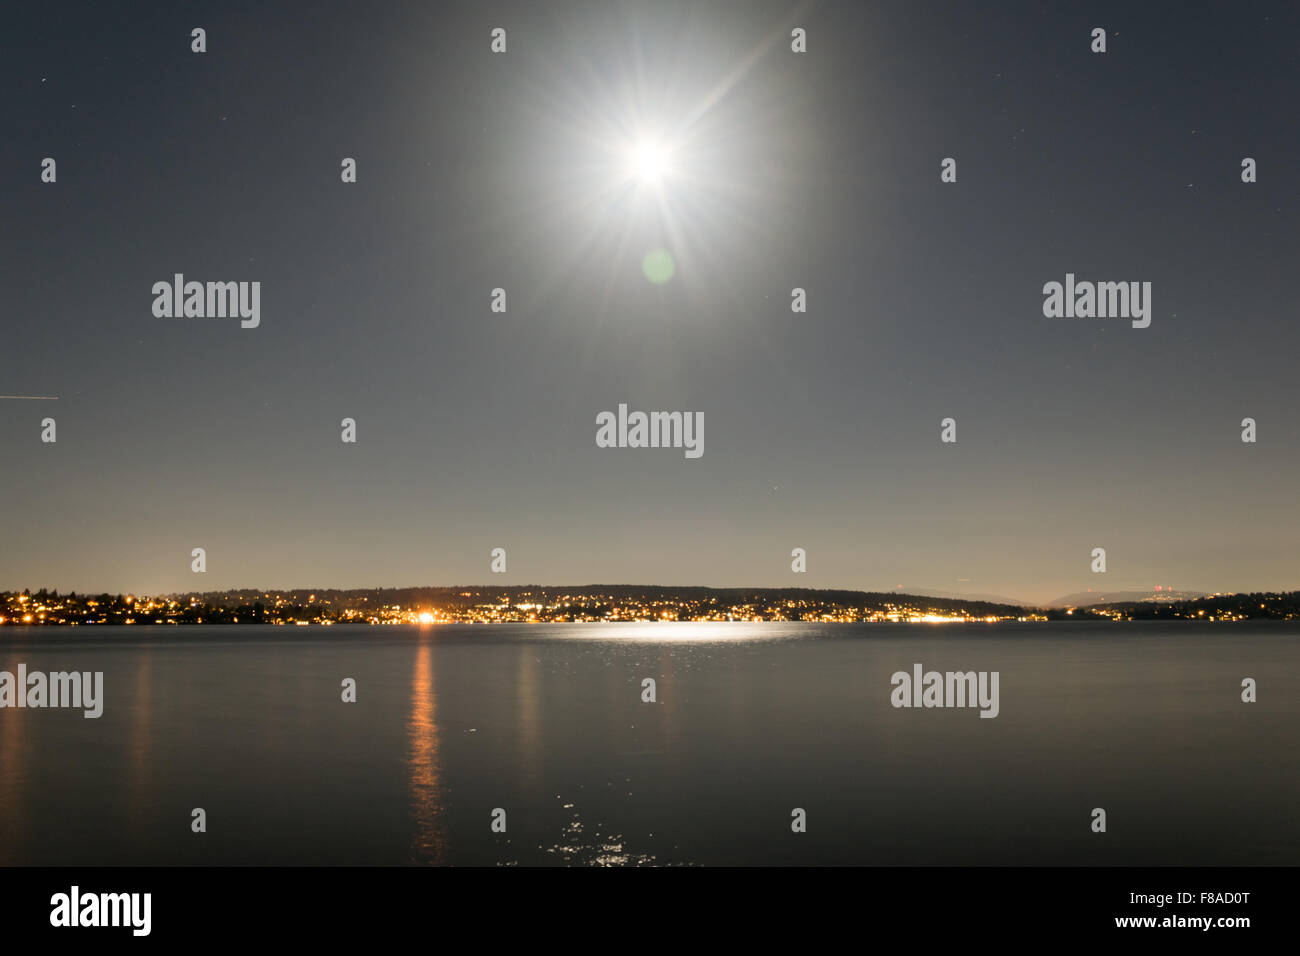 Ein hoher Dynamikbereich Schuss von einem hellen Mond über einen städtischen See. Stockfoto